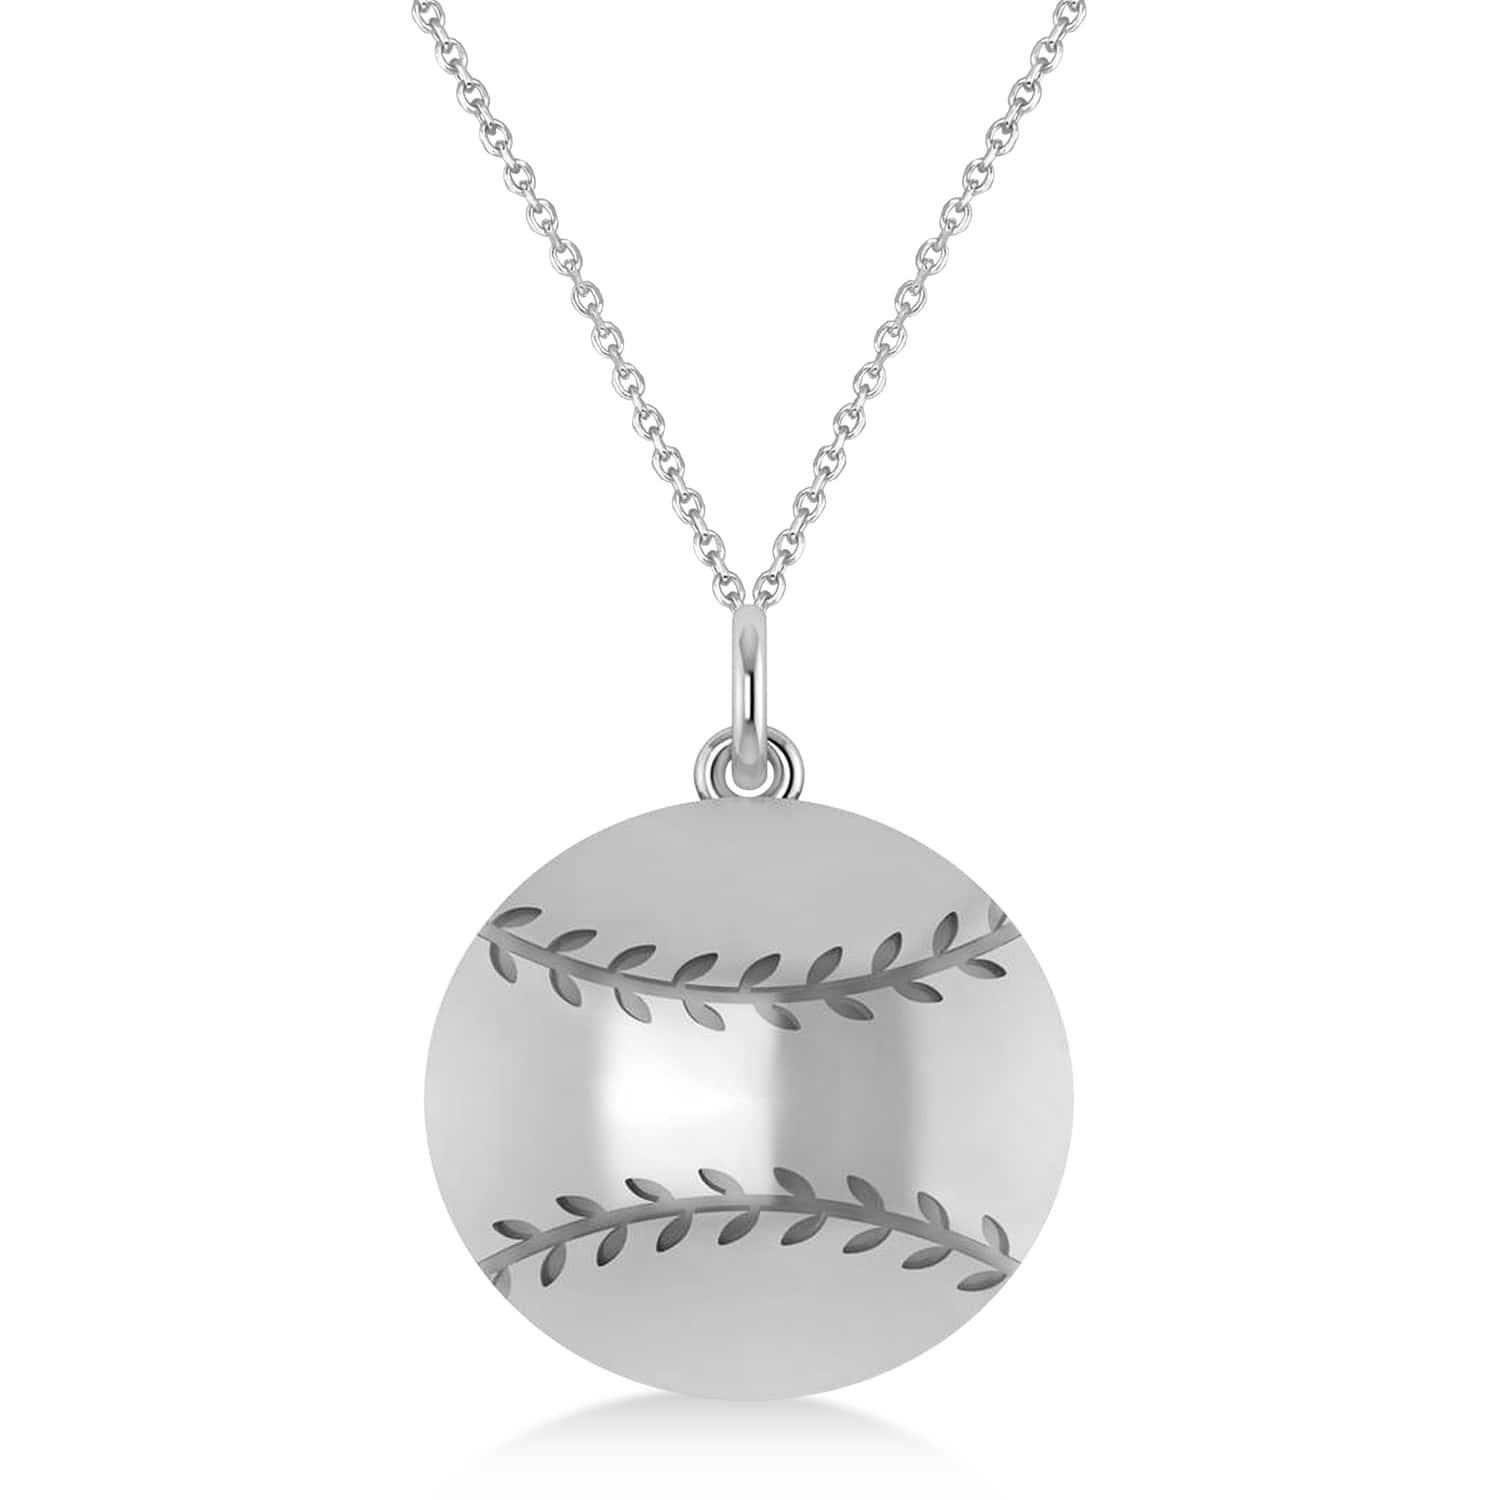 Baseball Charm Men's Pendant Necklace 14K White Gold